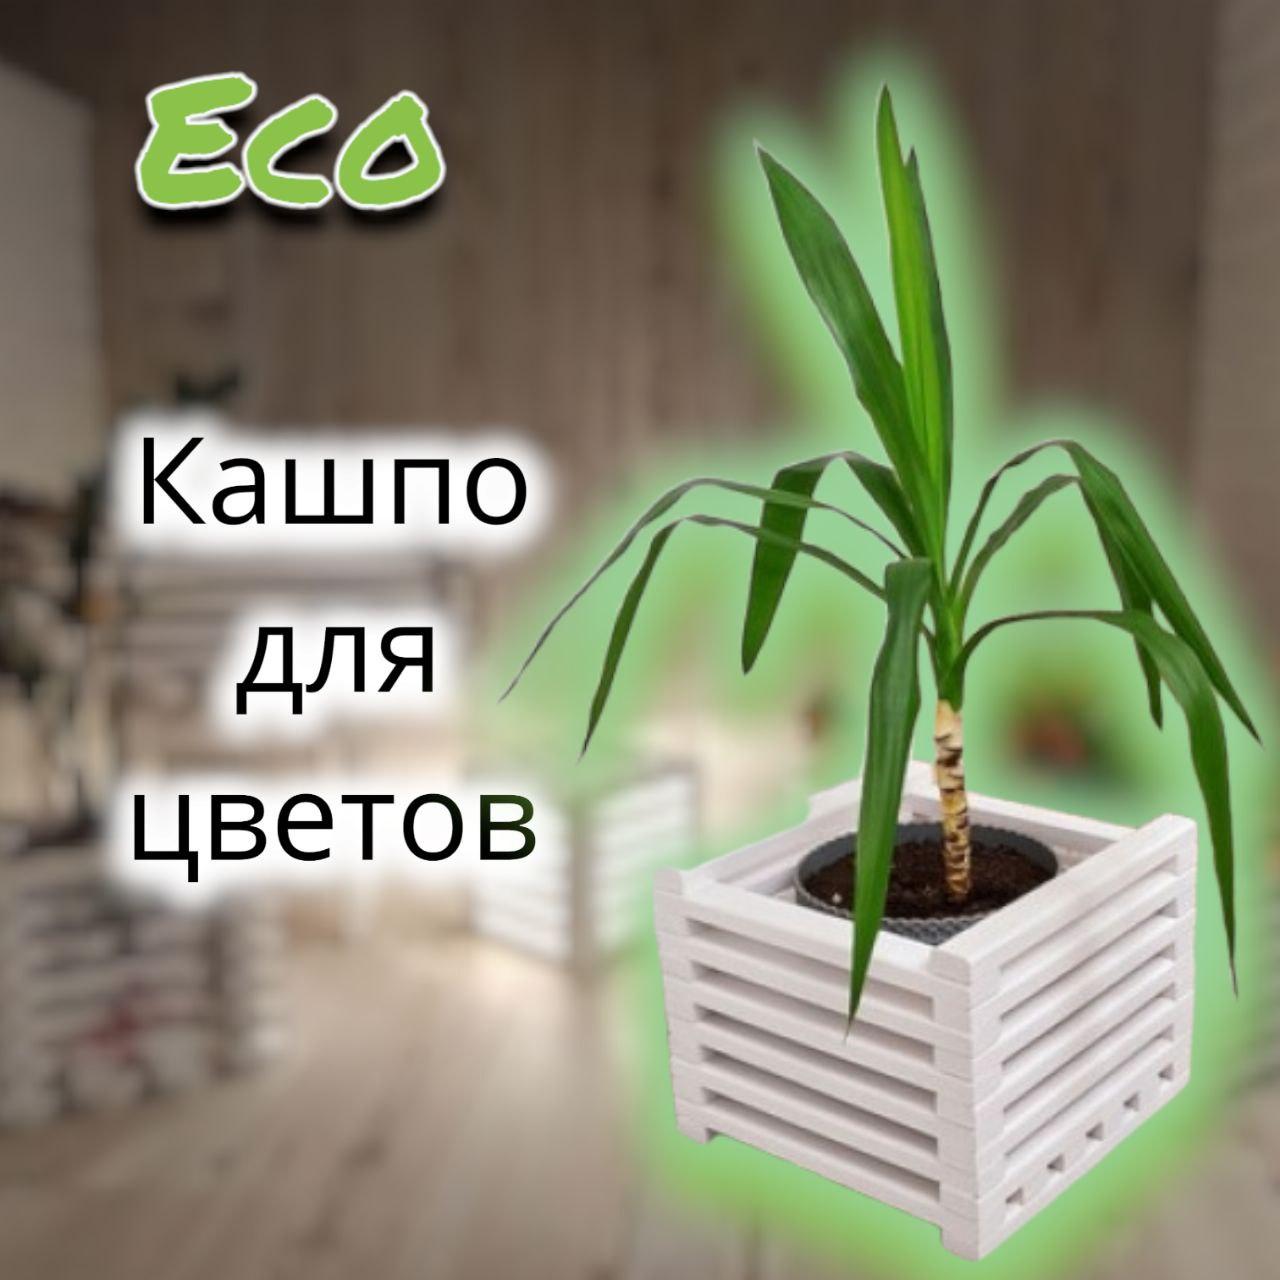 Кашпо деревянное для цветов одиночное  Eco